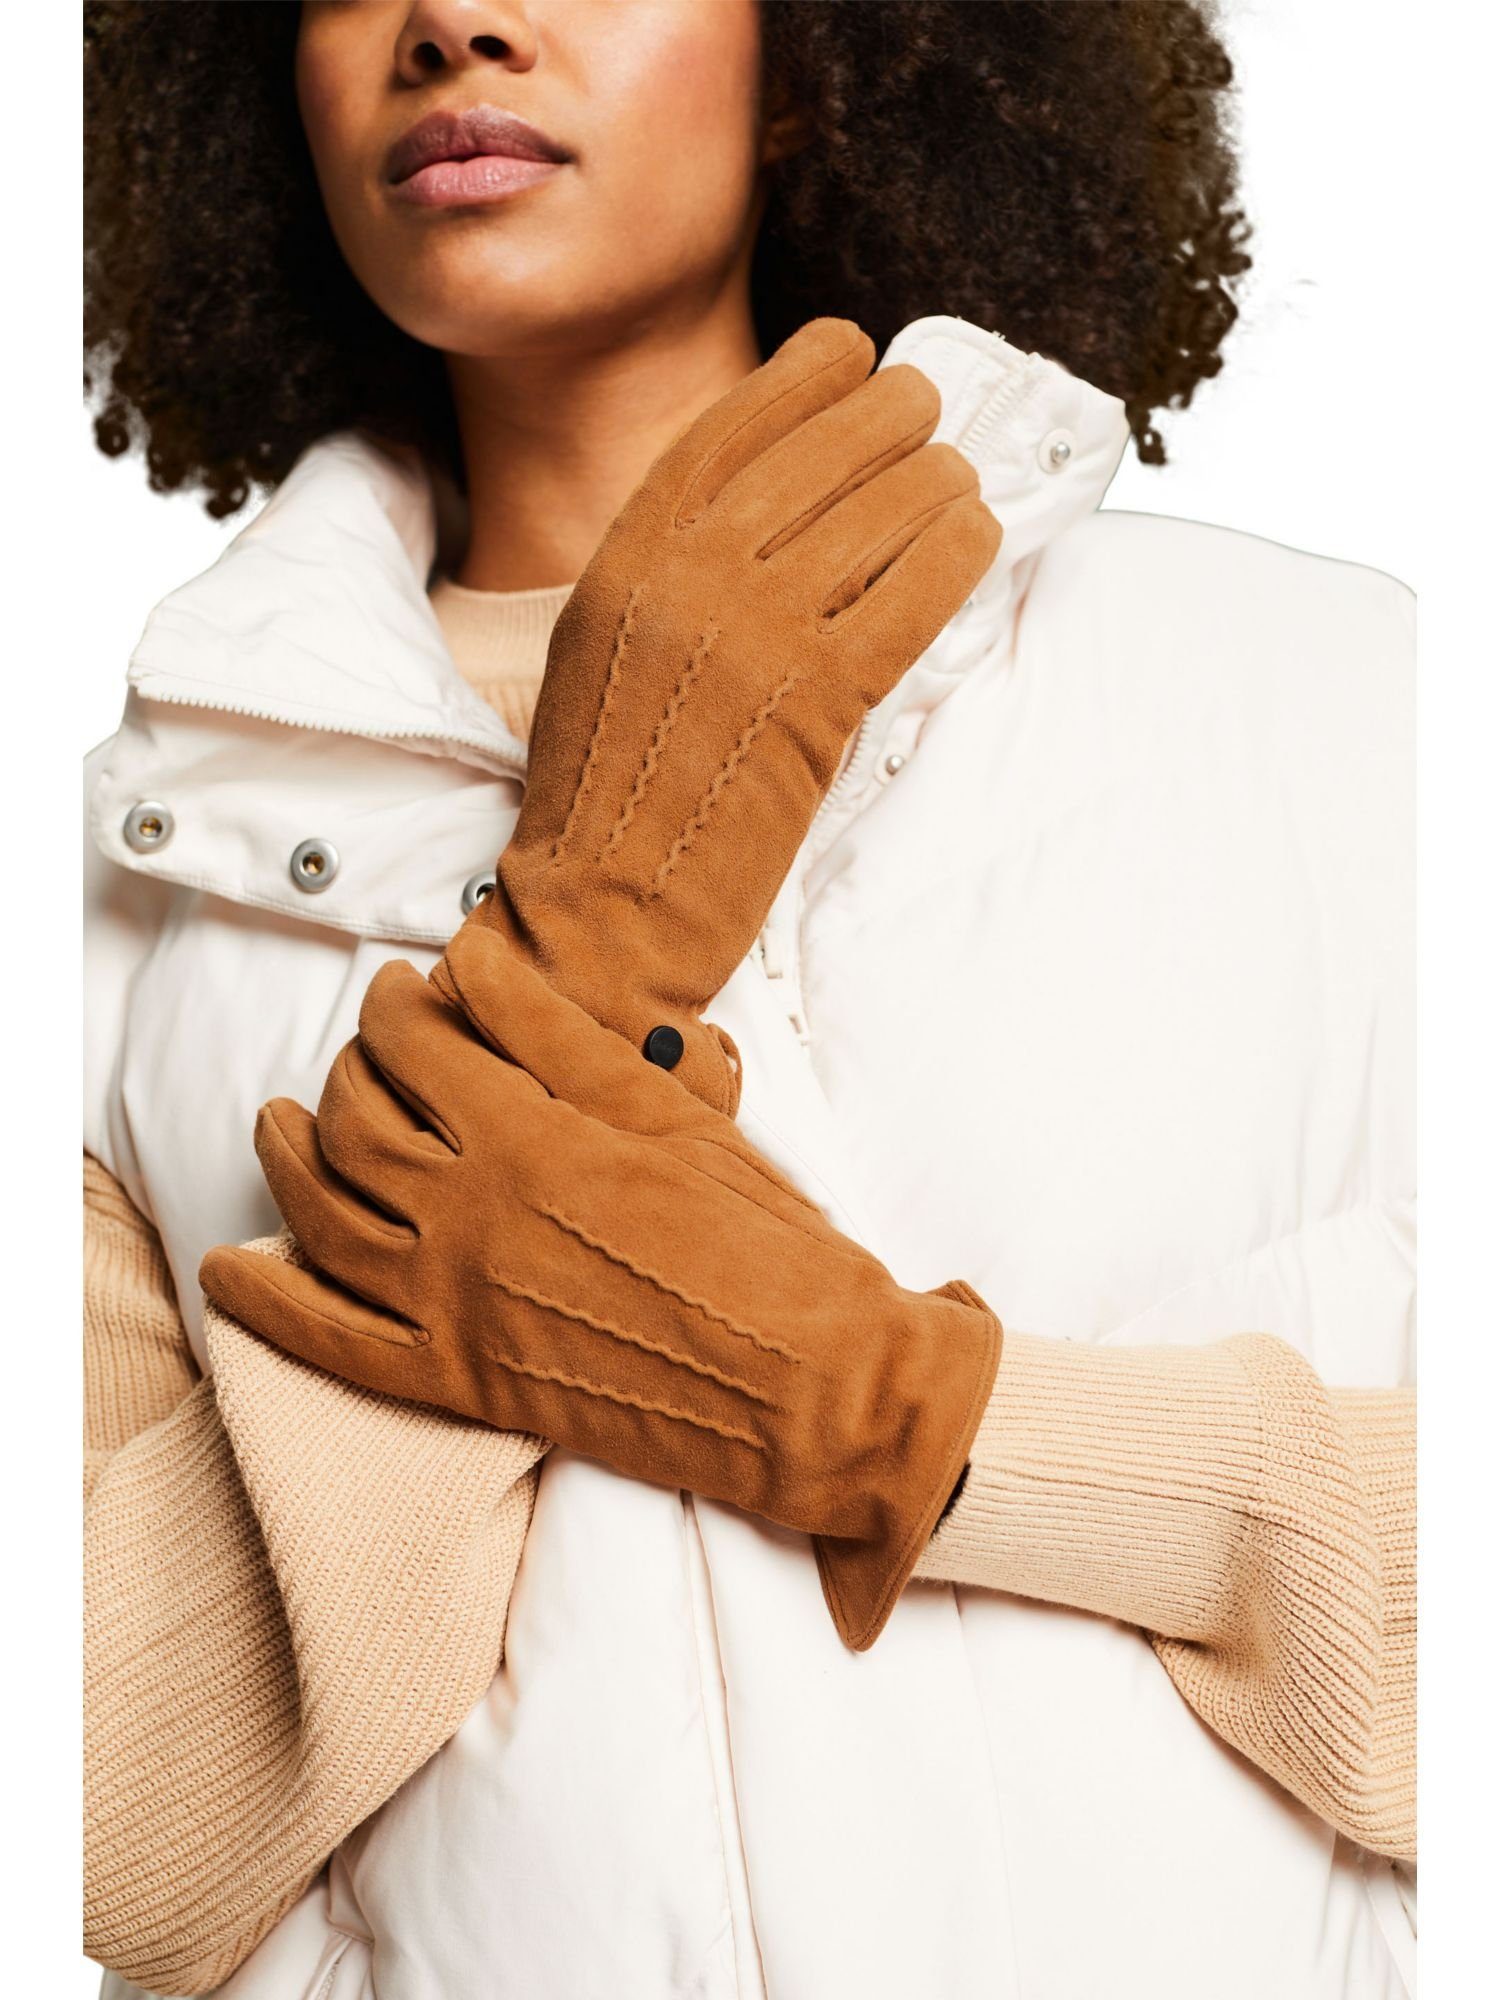 Rauleder-Handschuhe Lederhandschuhe mit CARAMEL Esprit Touchscreen-Funktion